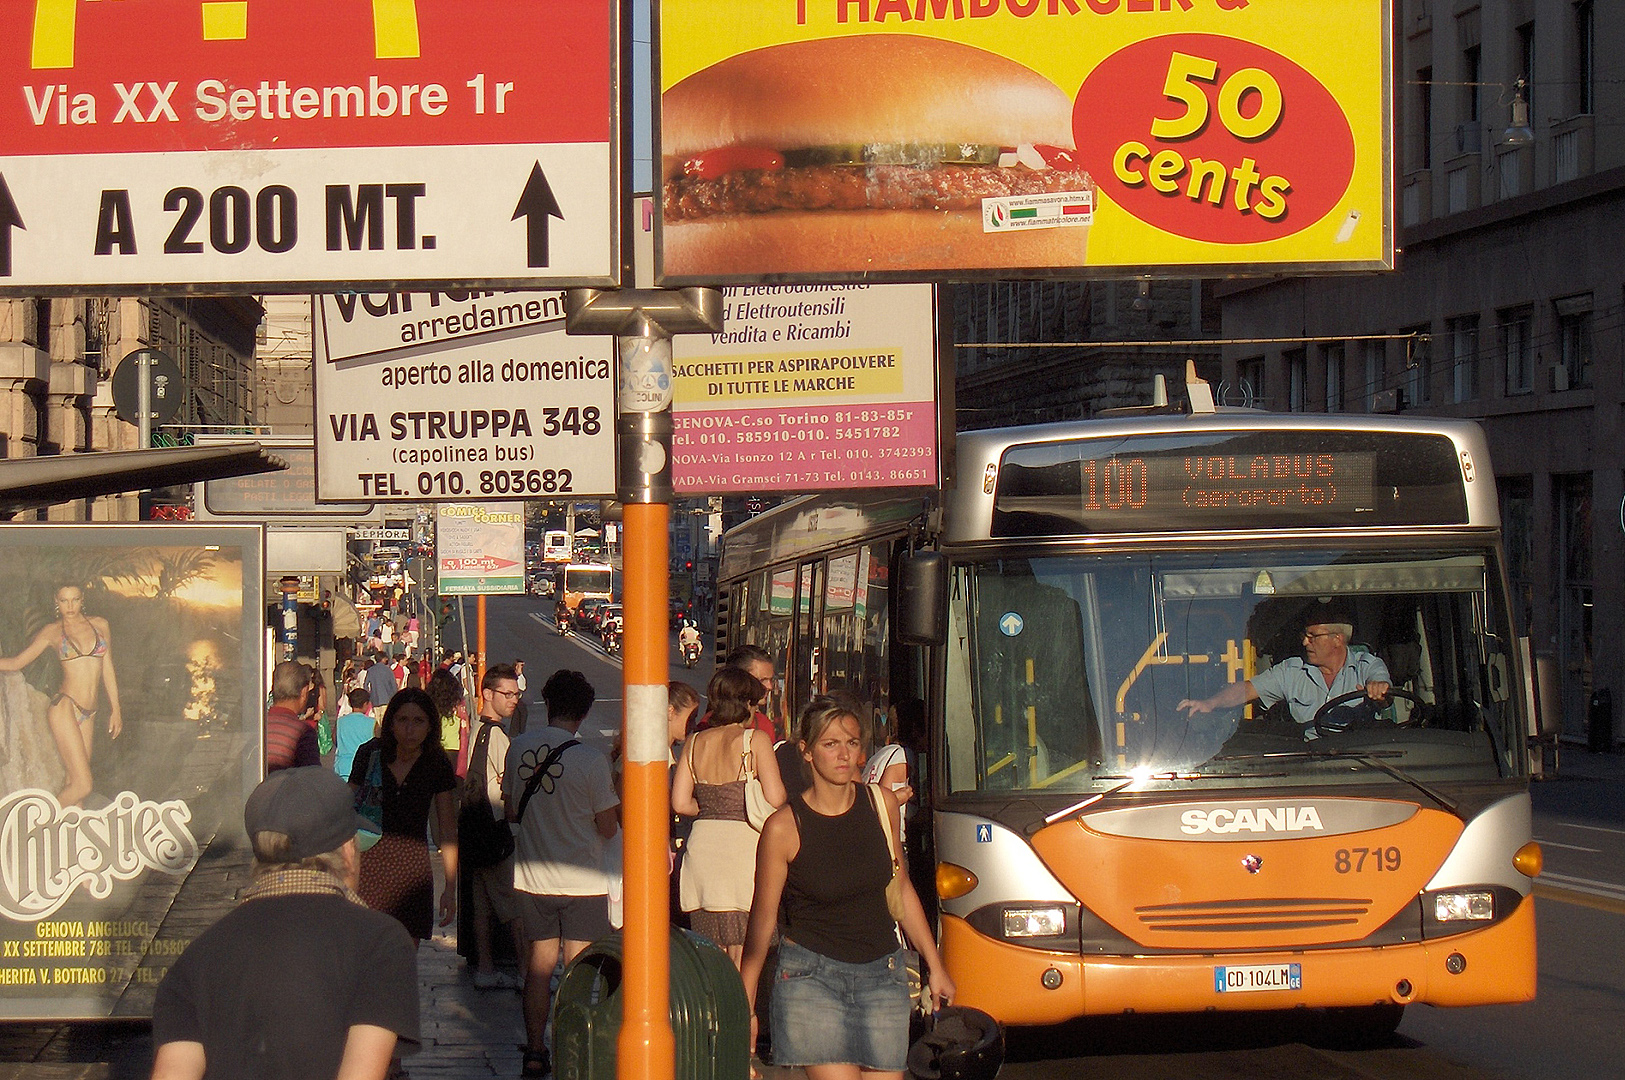 Stadsbus in Genua, Bus-stop in Genoa